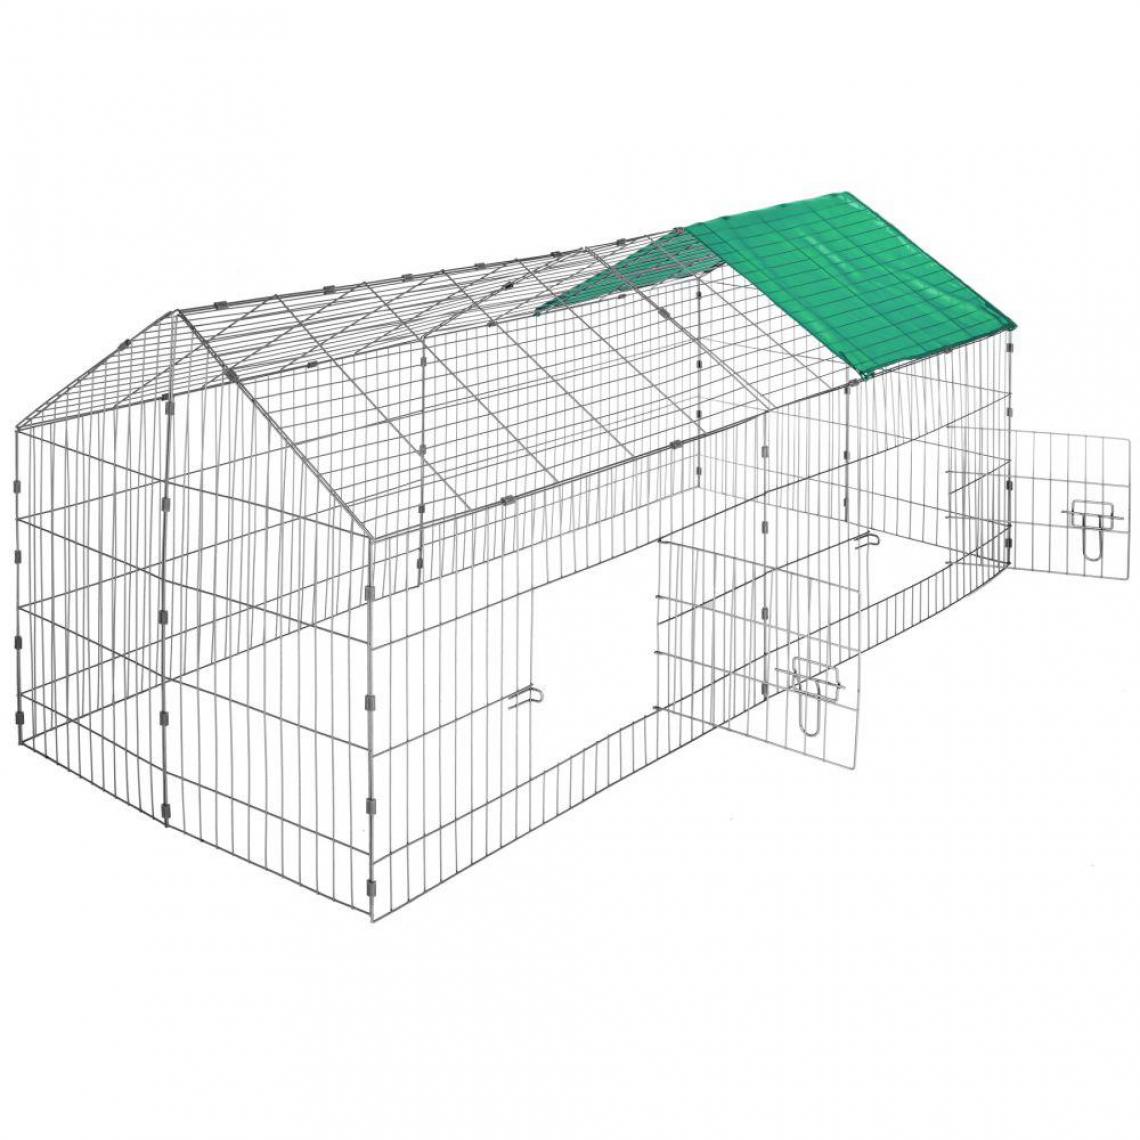 Helloshop26 - Enclos cage pour rongeurs 180 x 75 x 75 cm vert 3708154 - Cage pour rongeur